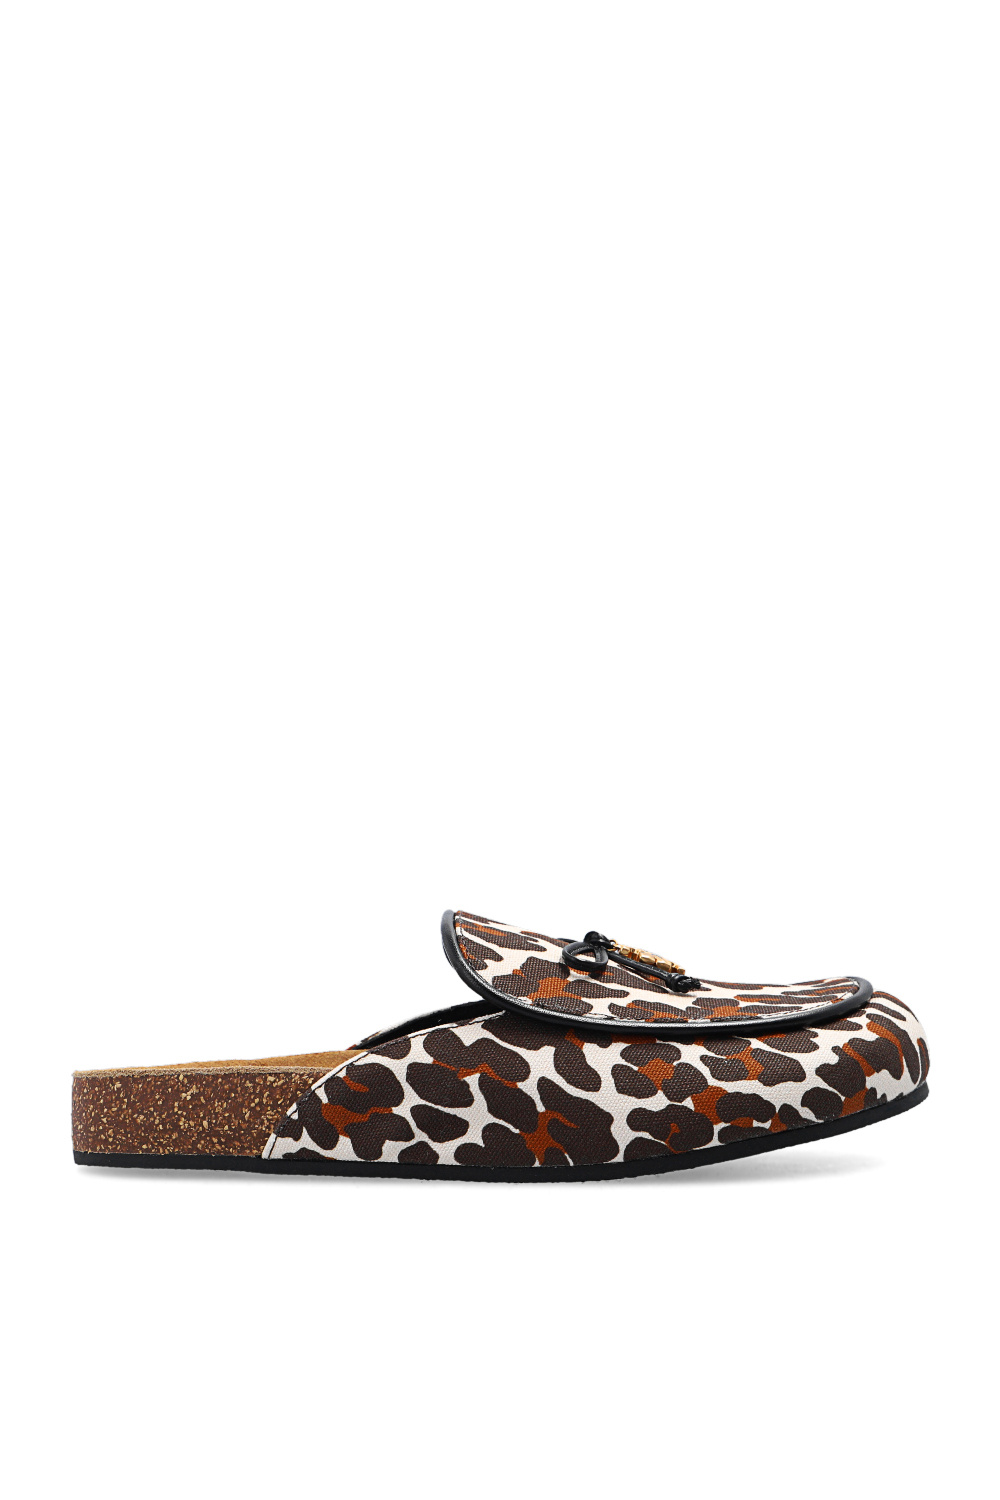 IetpShops | Coperni platform-sole sandals Schwarz | Women's Shoes | Tory  Burch Slides with animal motif